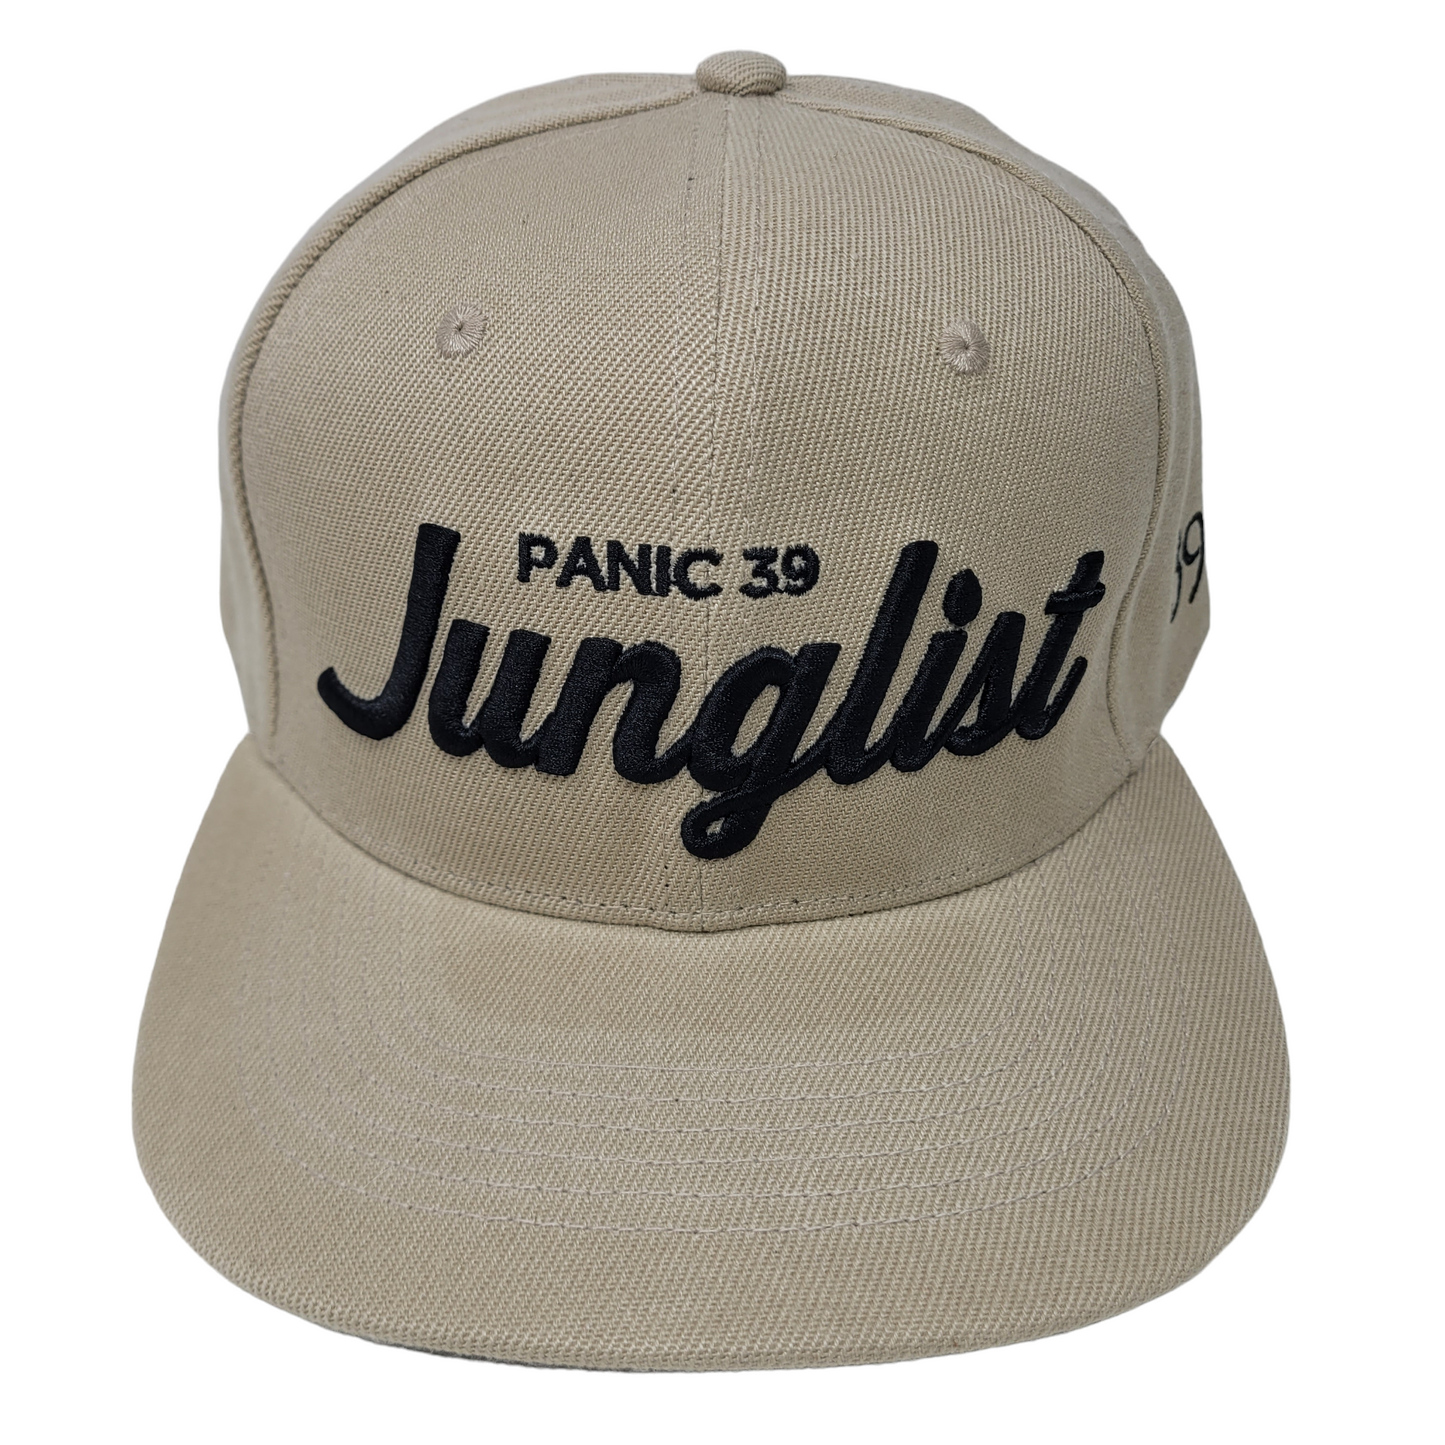 THE KHAKI PANIC 39 JUNGLIST SNAPBACK BASEBALL HAT